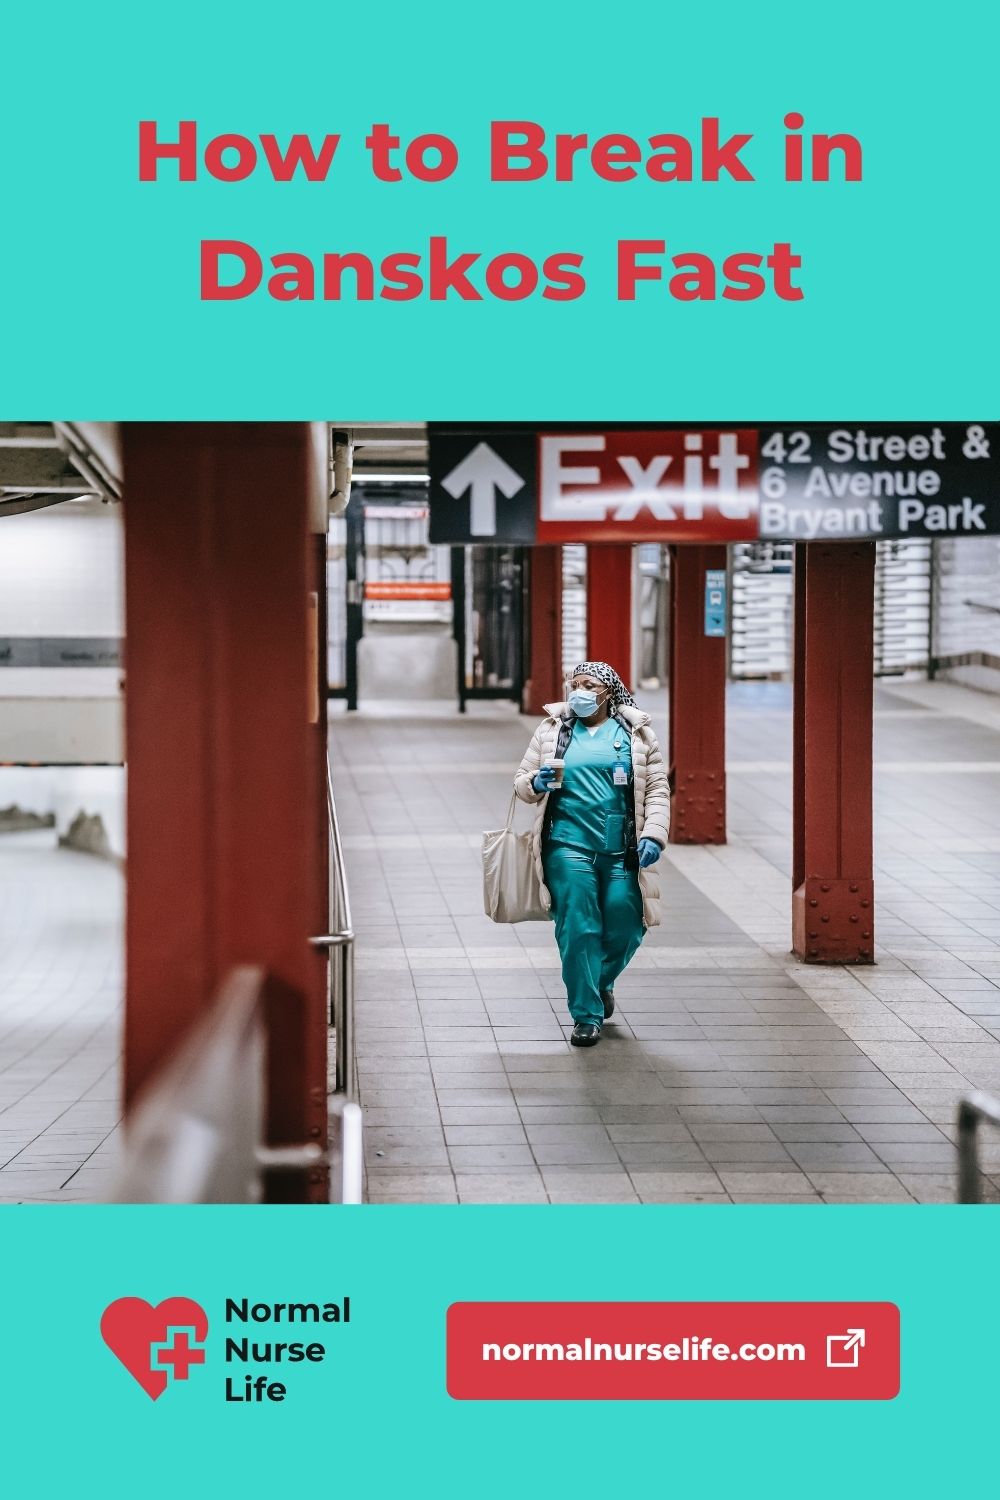 How to Break in Danskos - The Fastest Way